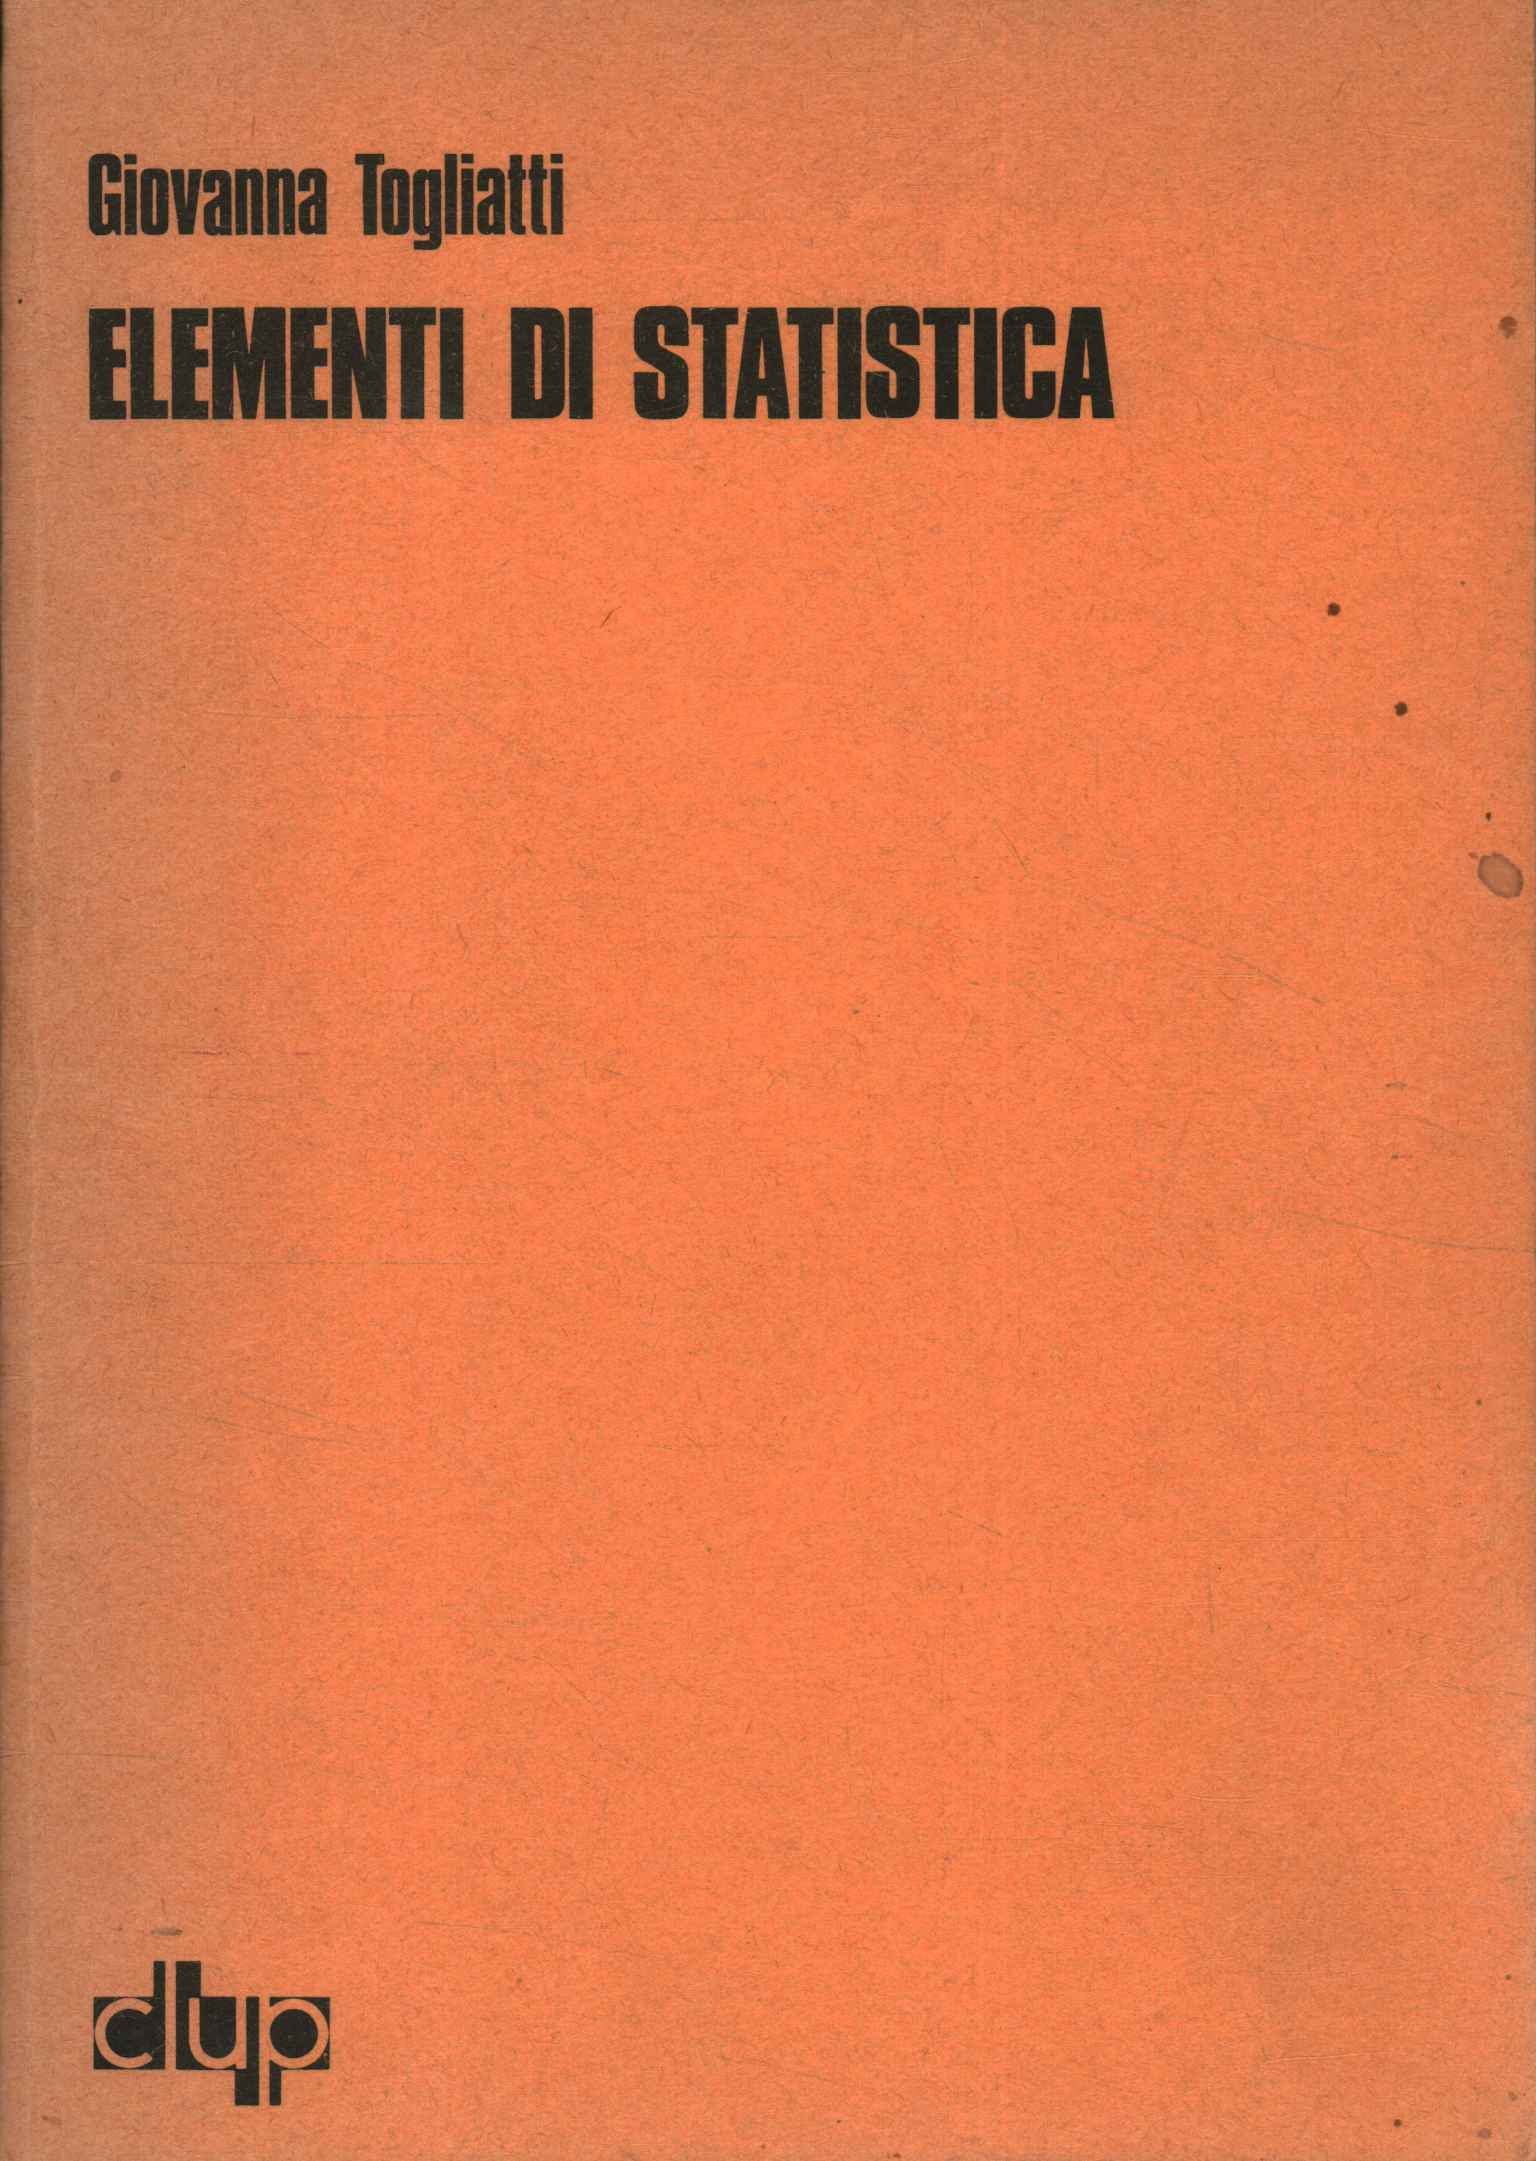 Elemente der Statistik